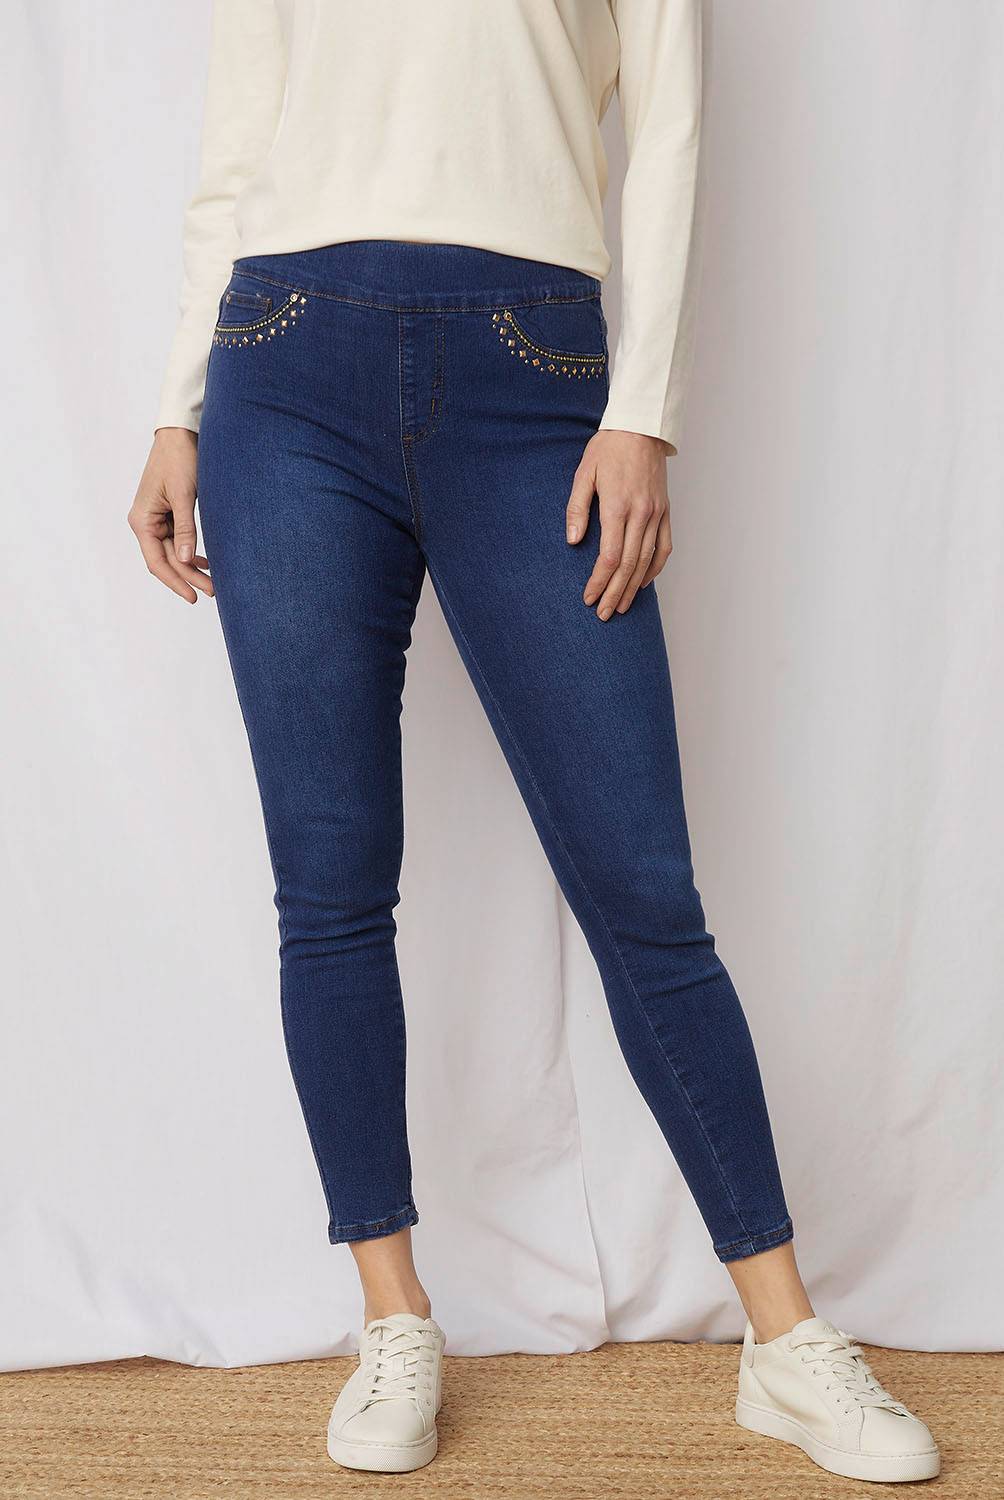 S. COCCI - Jeans Skinny Tiro Medio Mujer S. Cocci